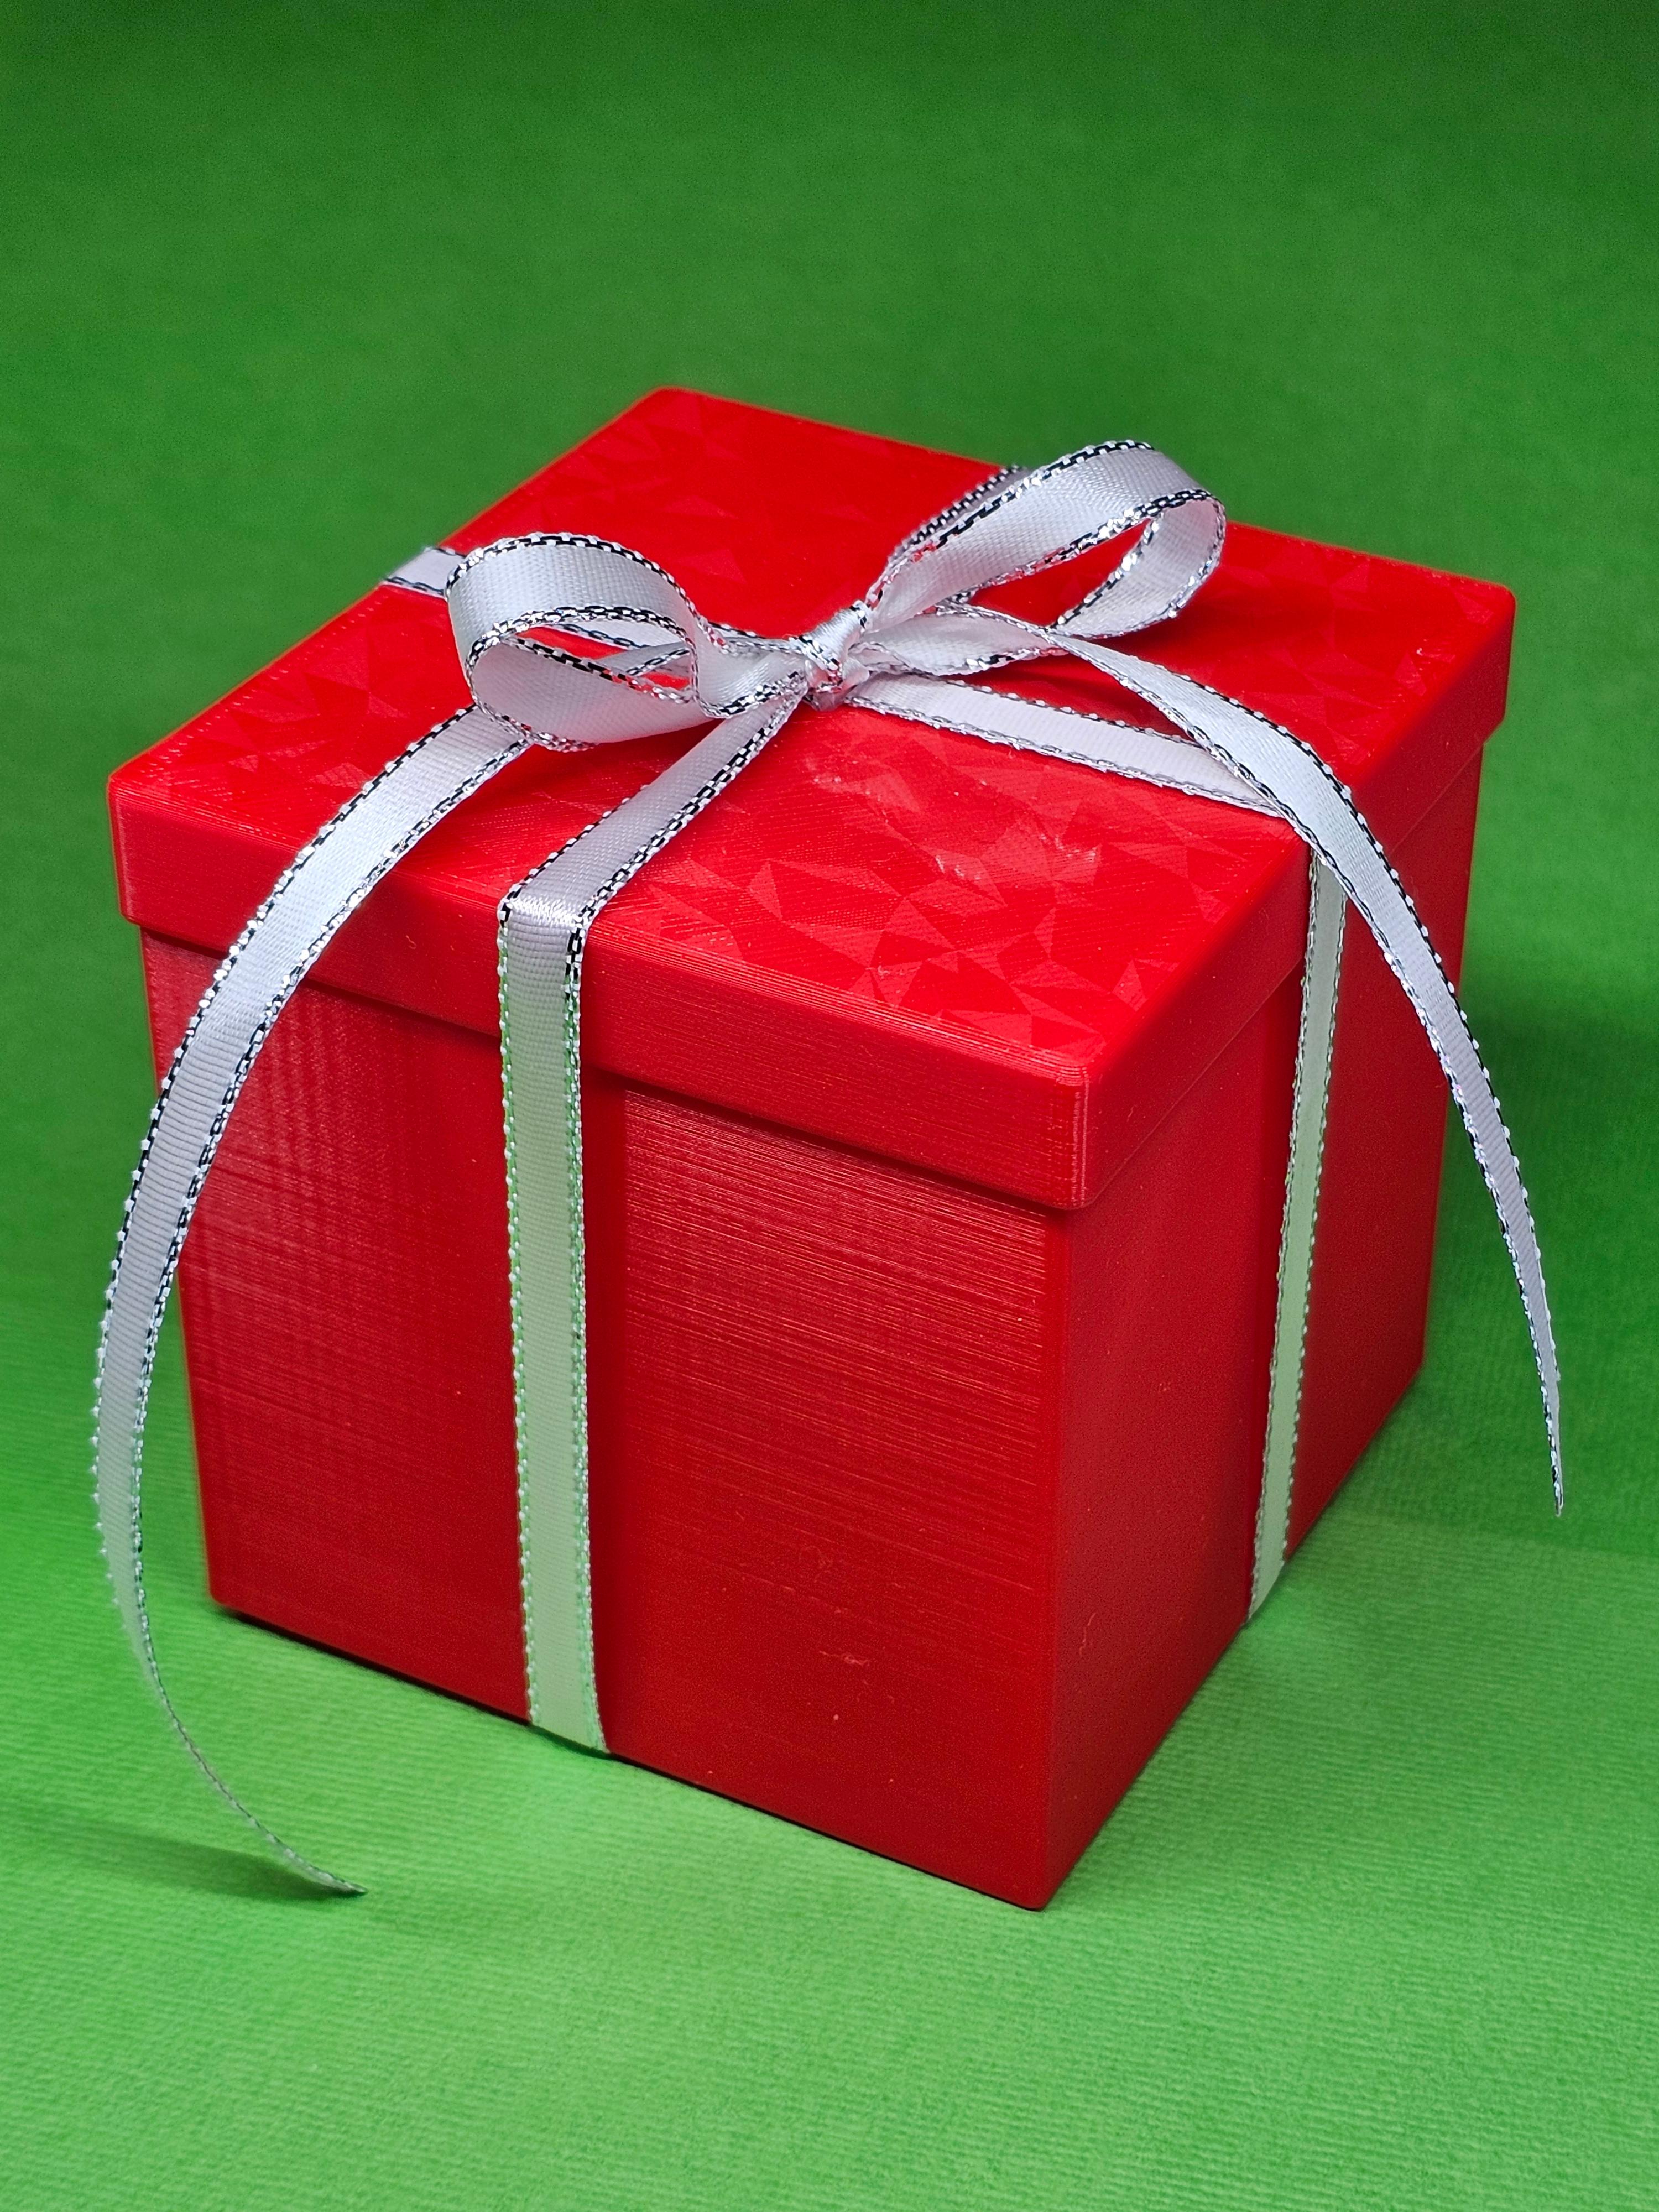 Ribbon Gift Box C Lite with ribbon loop and slot